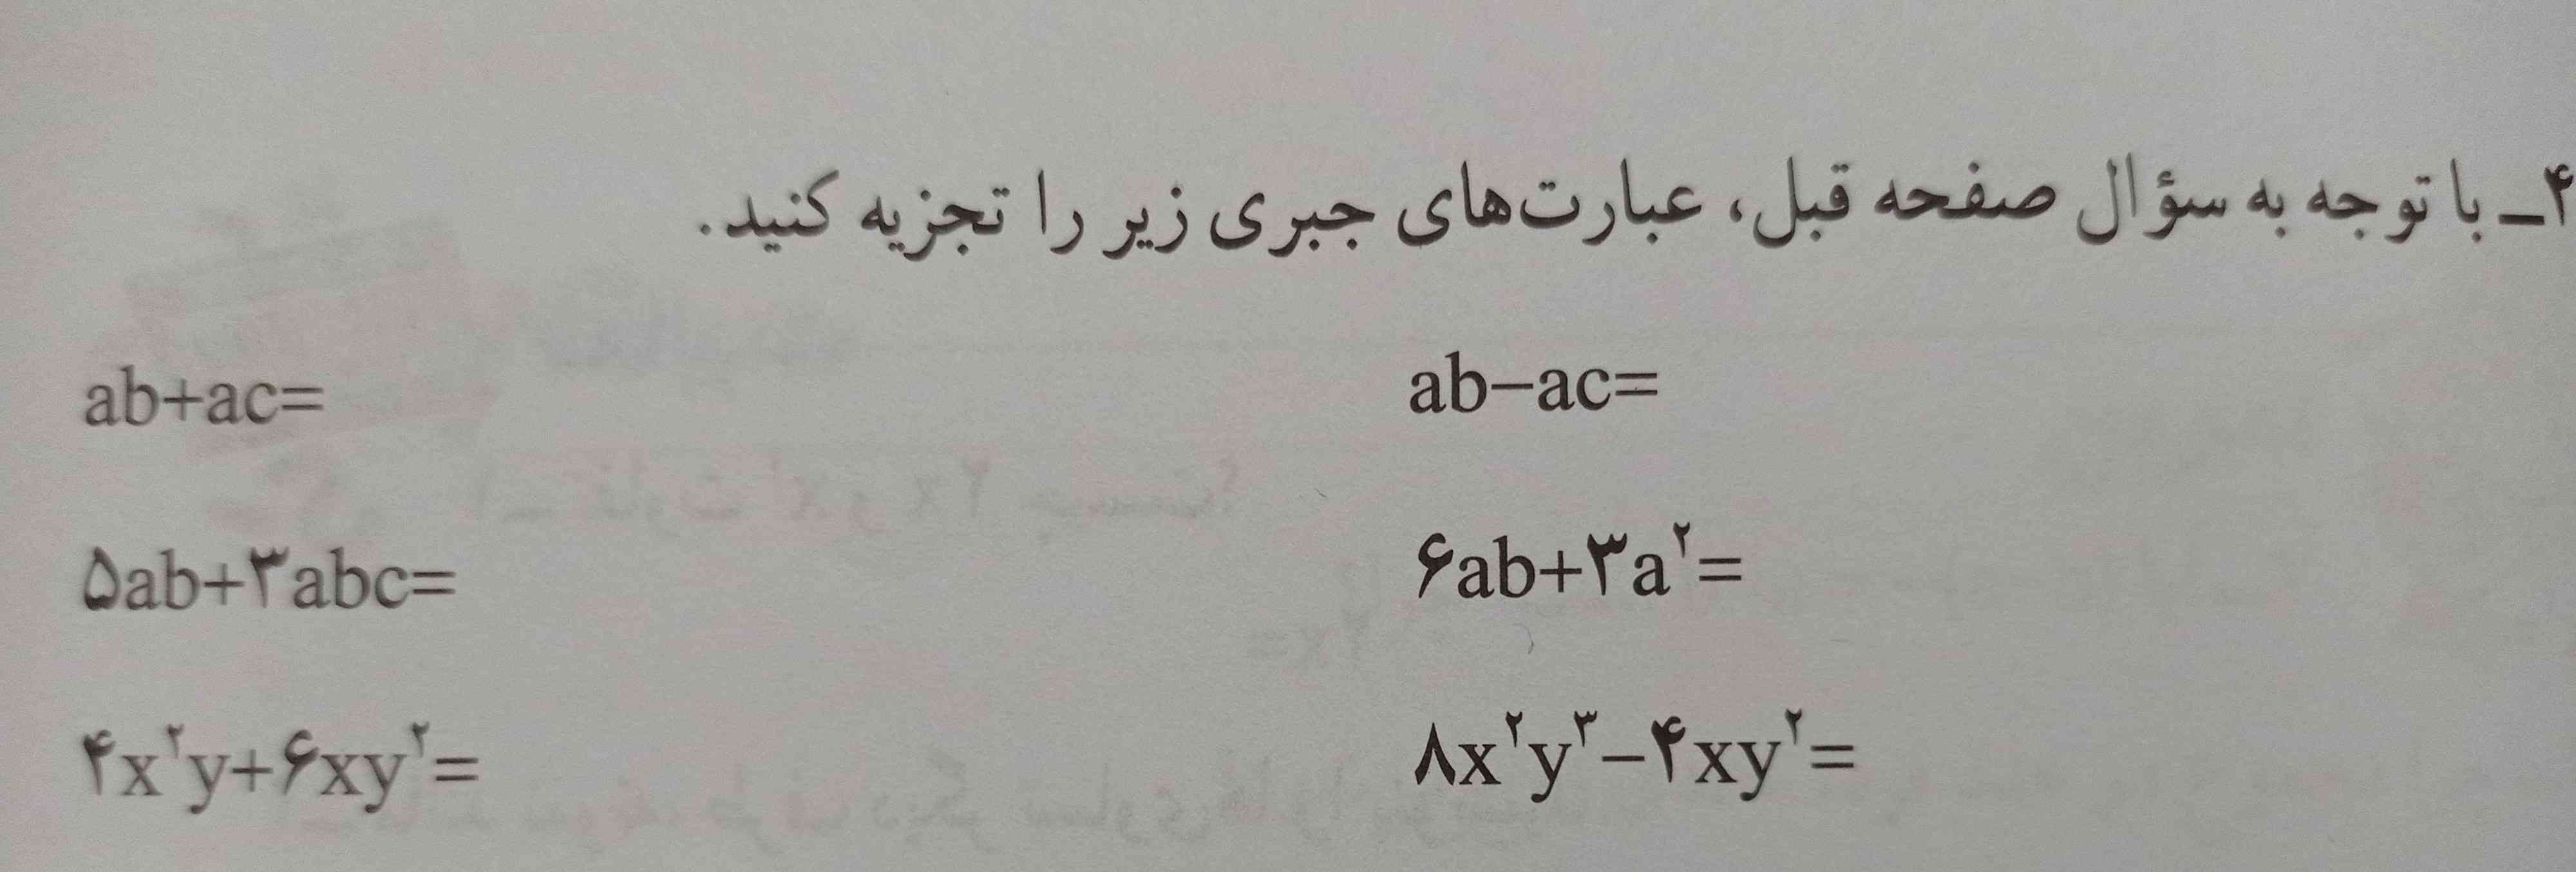 سلام سوال 4 صفحه 61 را حل می کنید لطفاً🌹🌹🌹